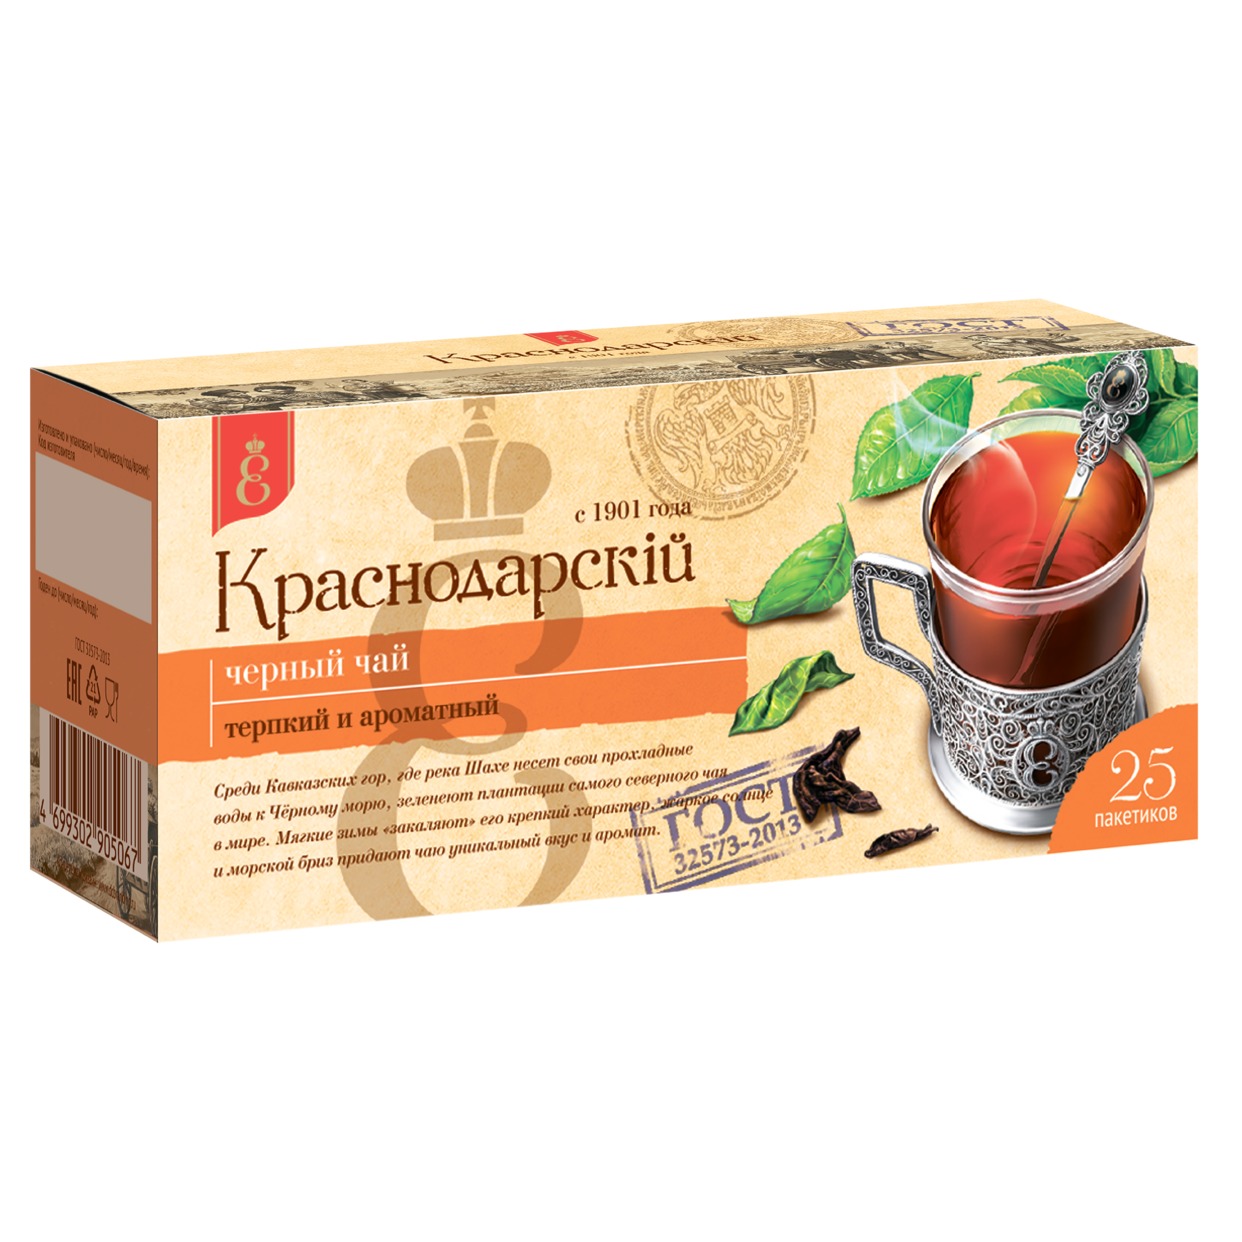 Чай черный (Ч) "Краснодарскiй с 1901 года" 25 шт. по 1,7г/24 по акции в Пятерочке